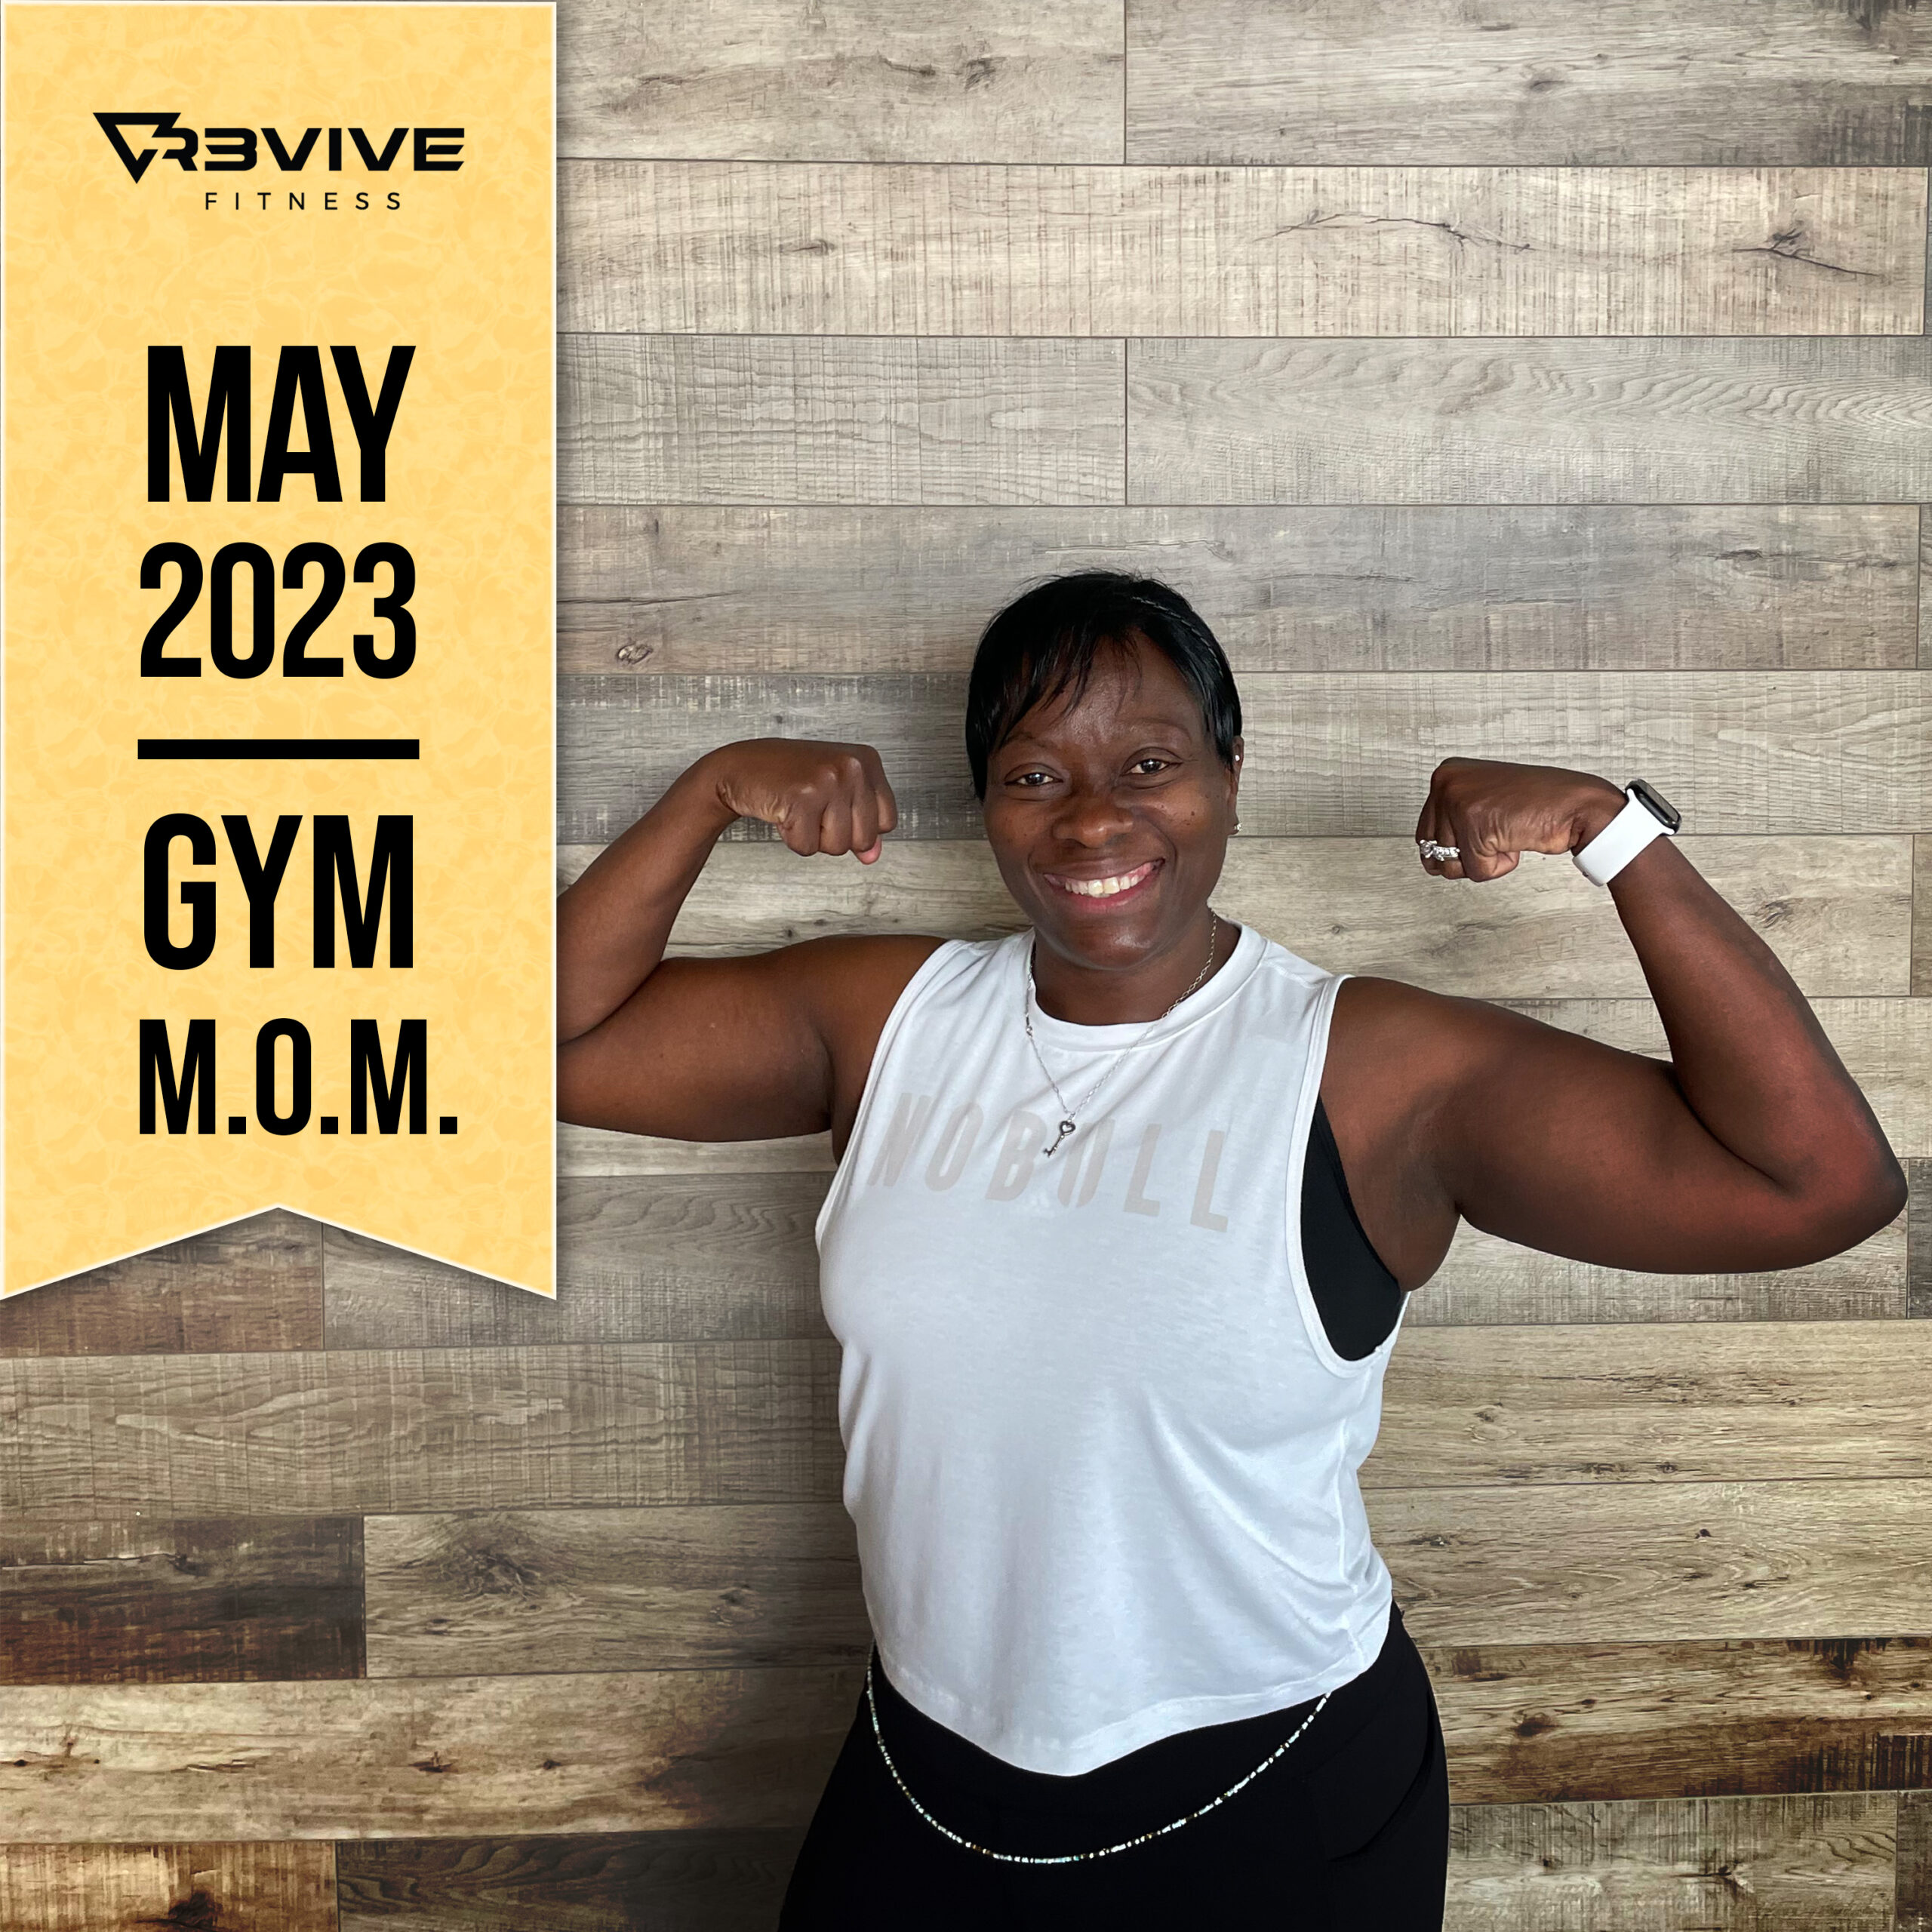 May 2023's gym MOM, Carolyn!